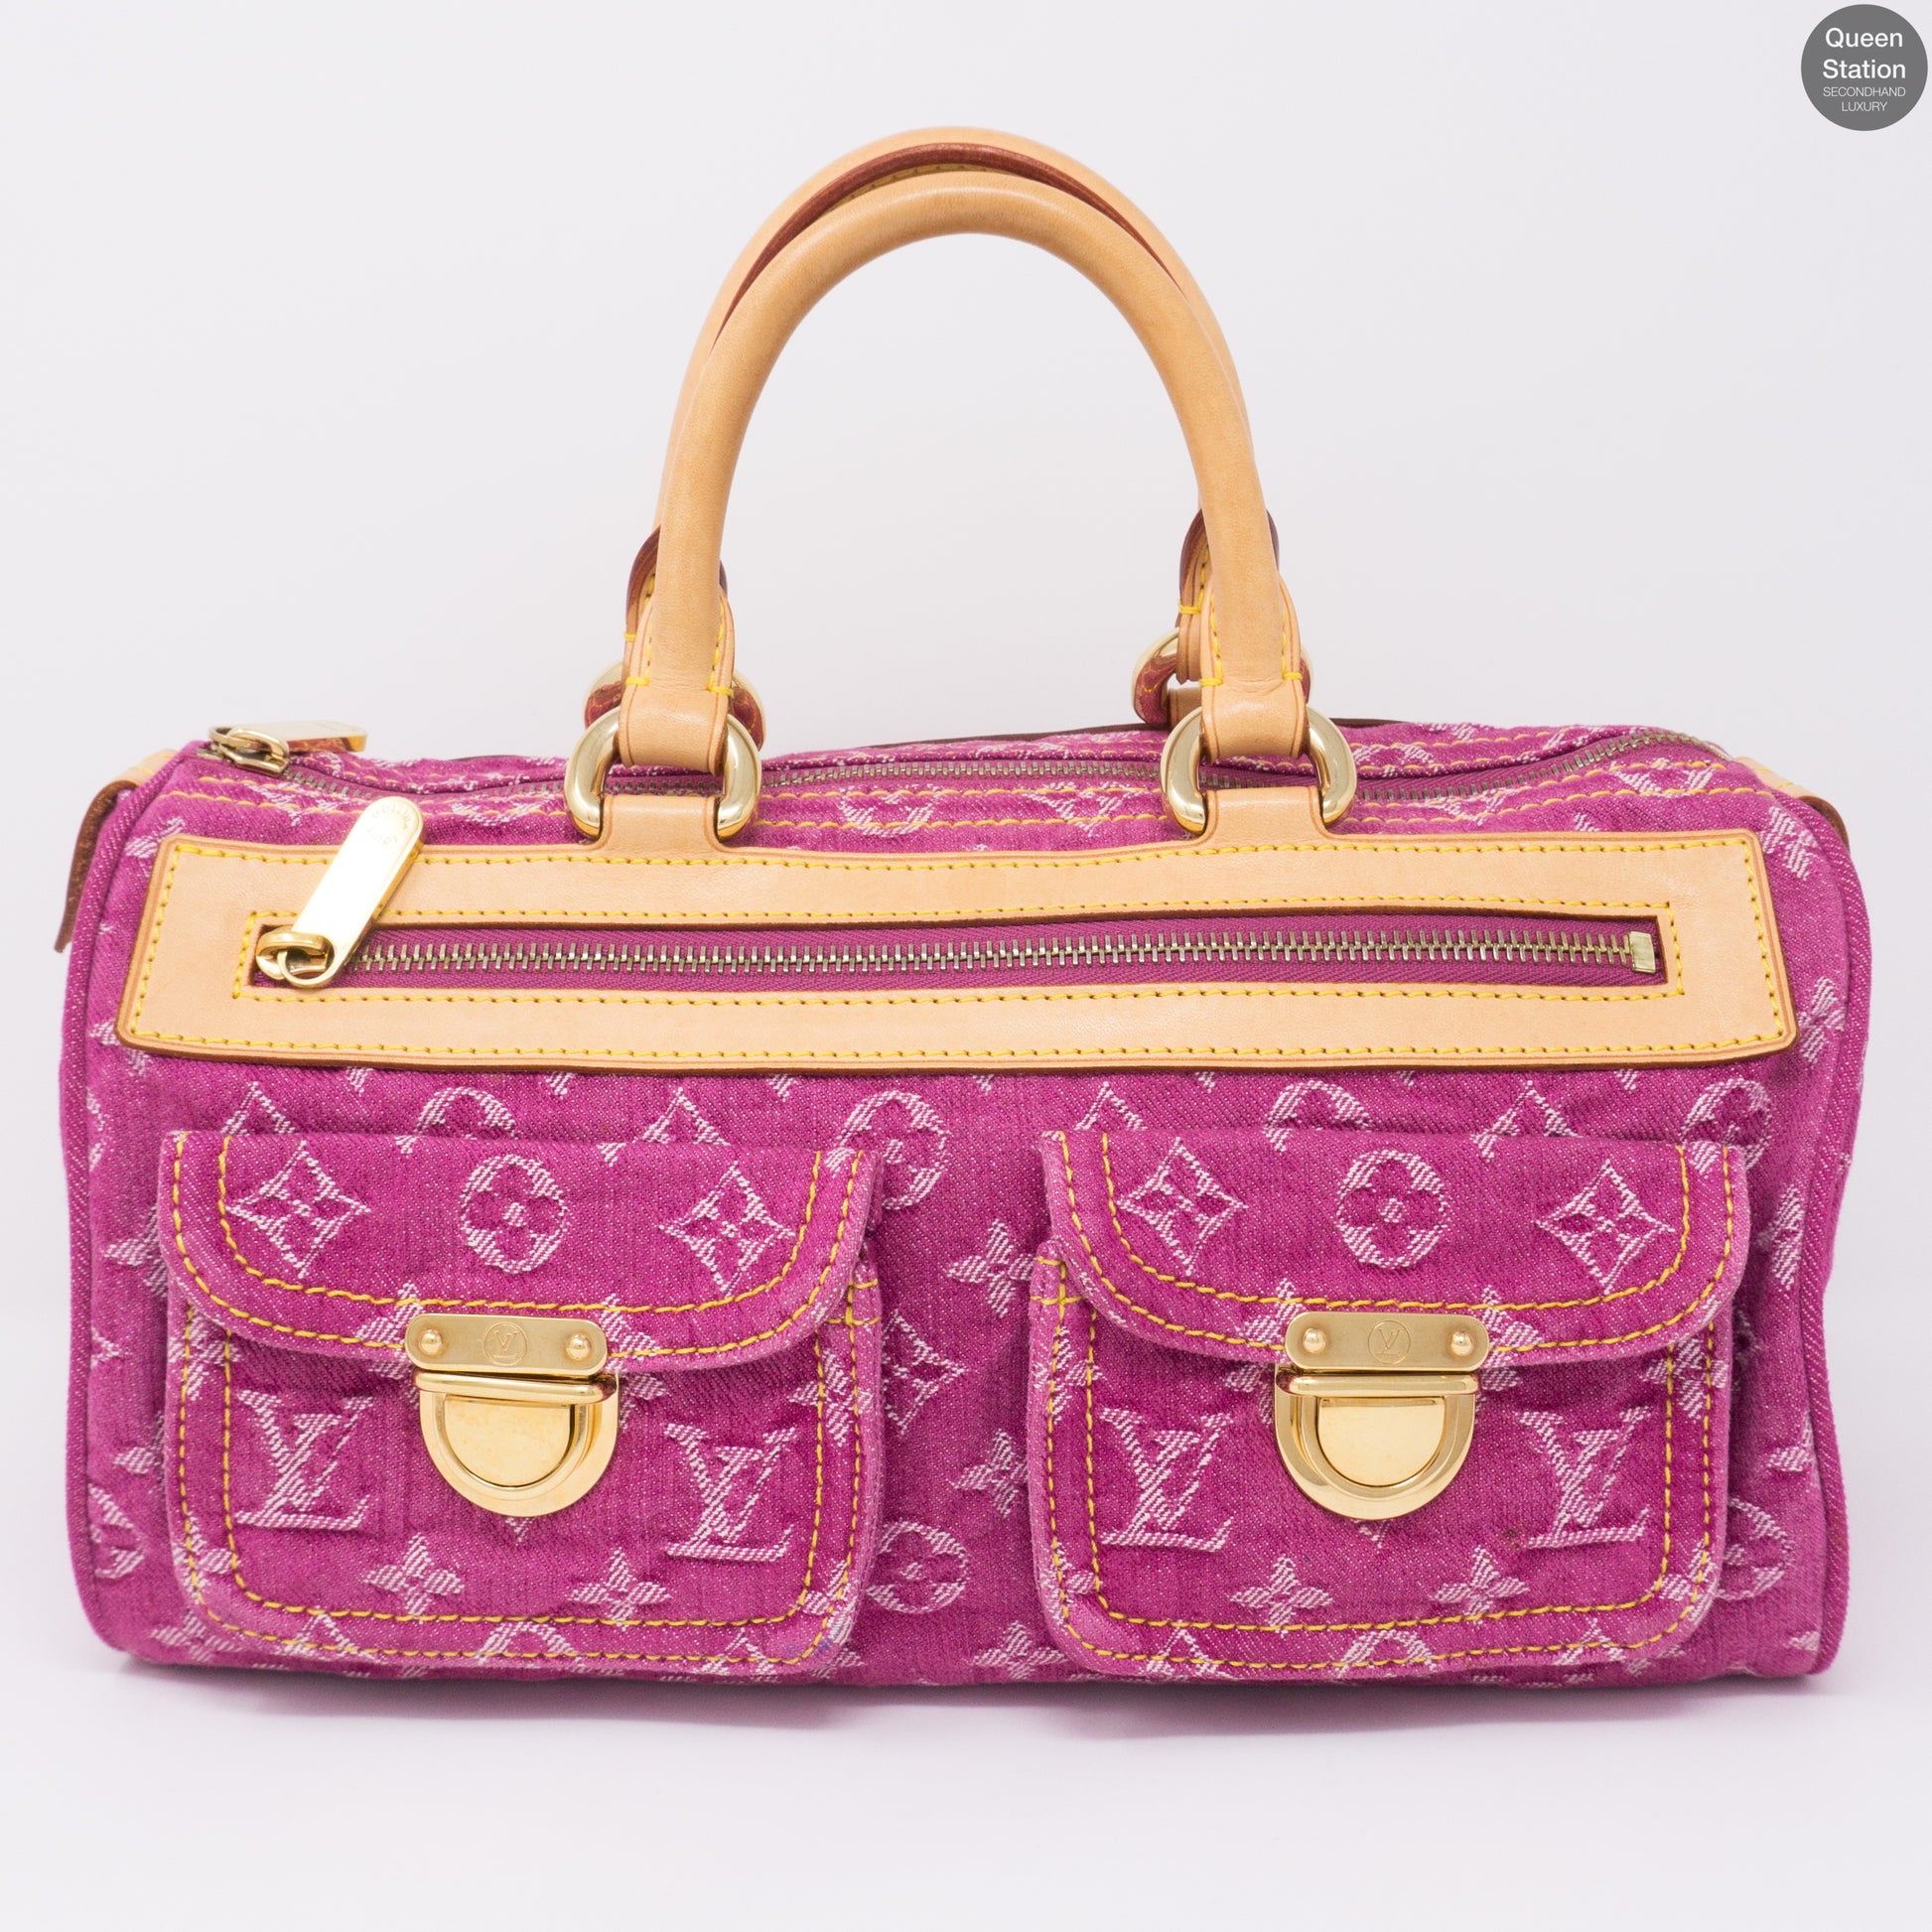 Louis Vuitton – Neo Speedy Pink Denim Monogram – Queen Station